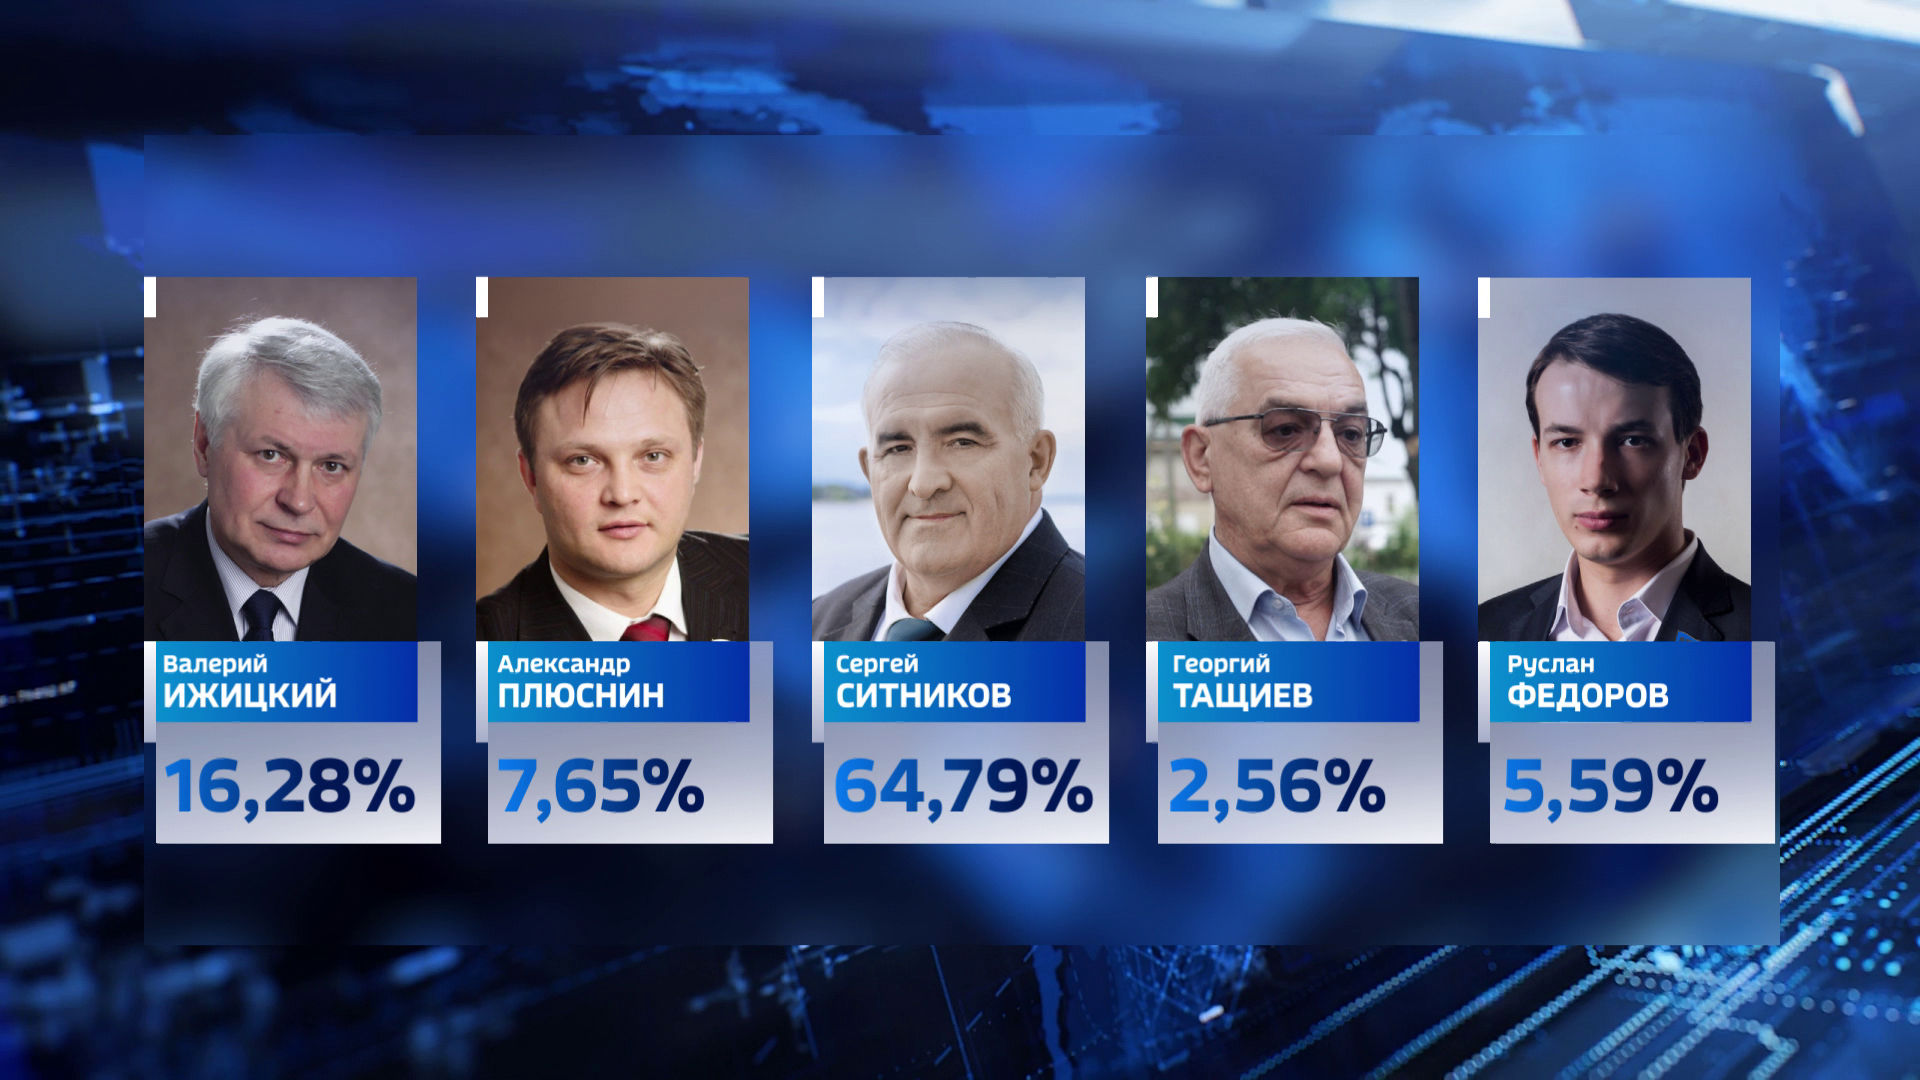 Сергей Ситников победил на выборах губернатора Костромской области